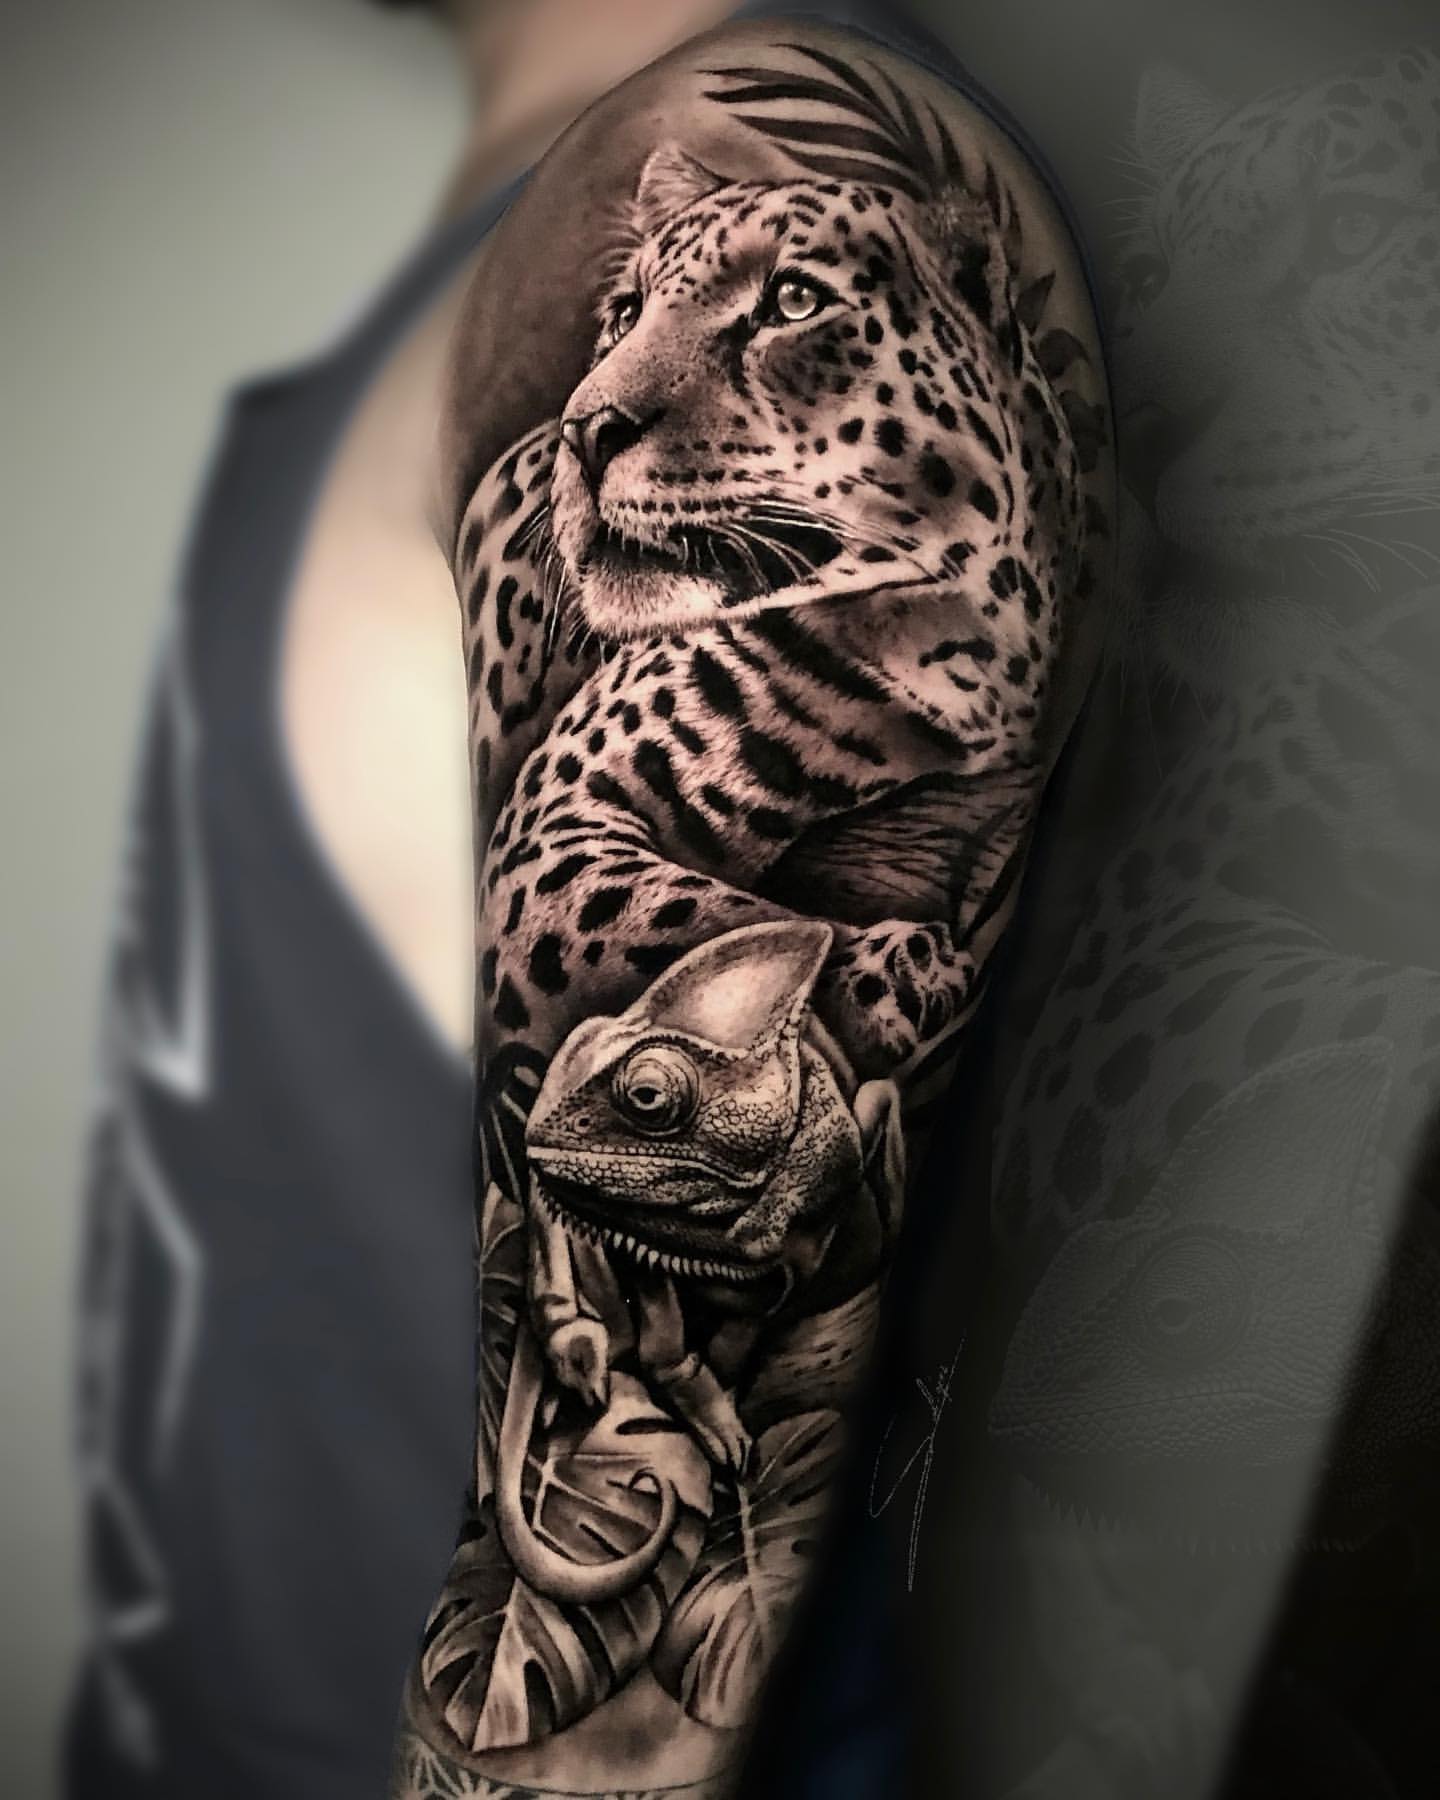 Leopard and Jaguar Tattoo Ideas 11